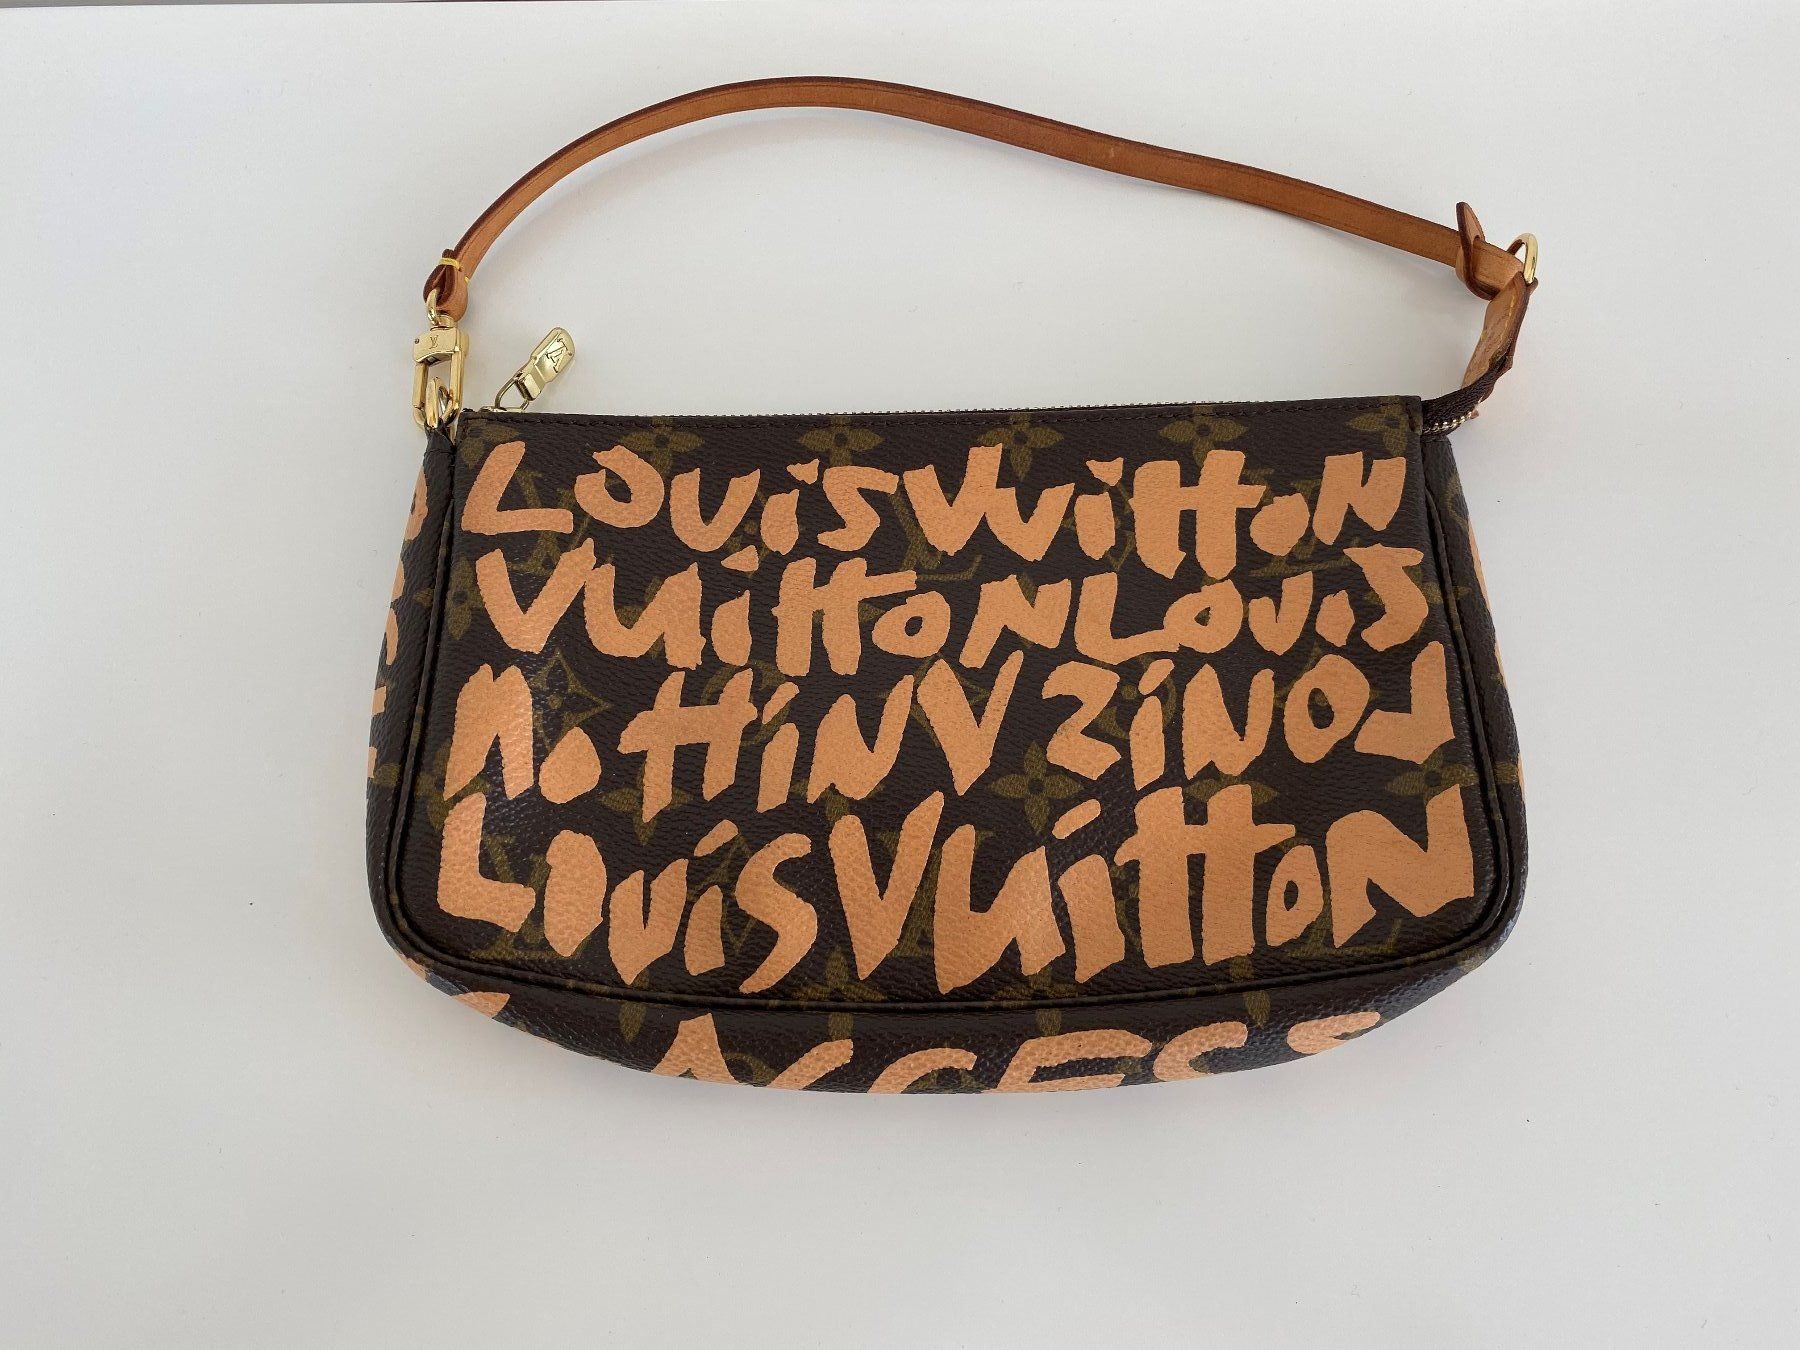 Louis Vuitton Tasche Limited Edition kaufen auf Ricardo